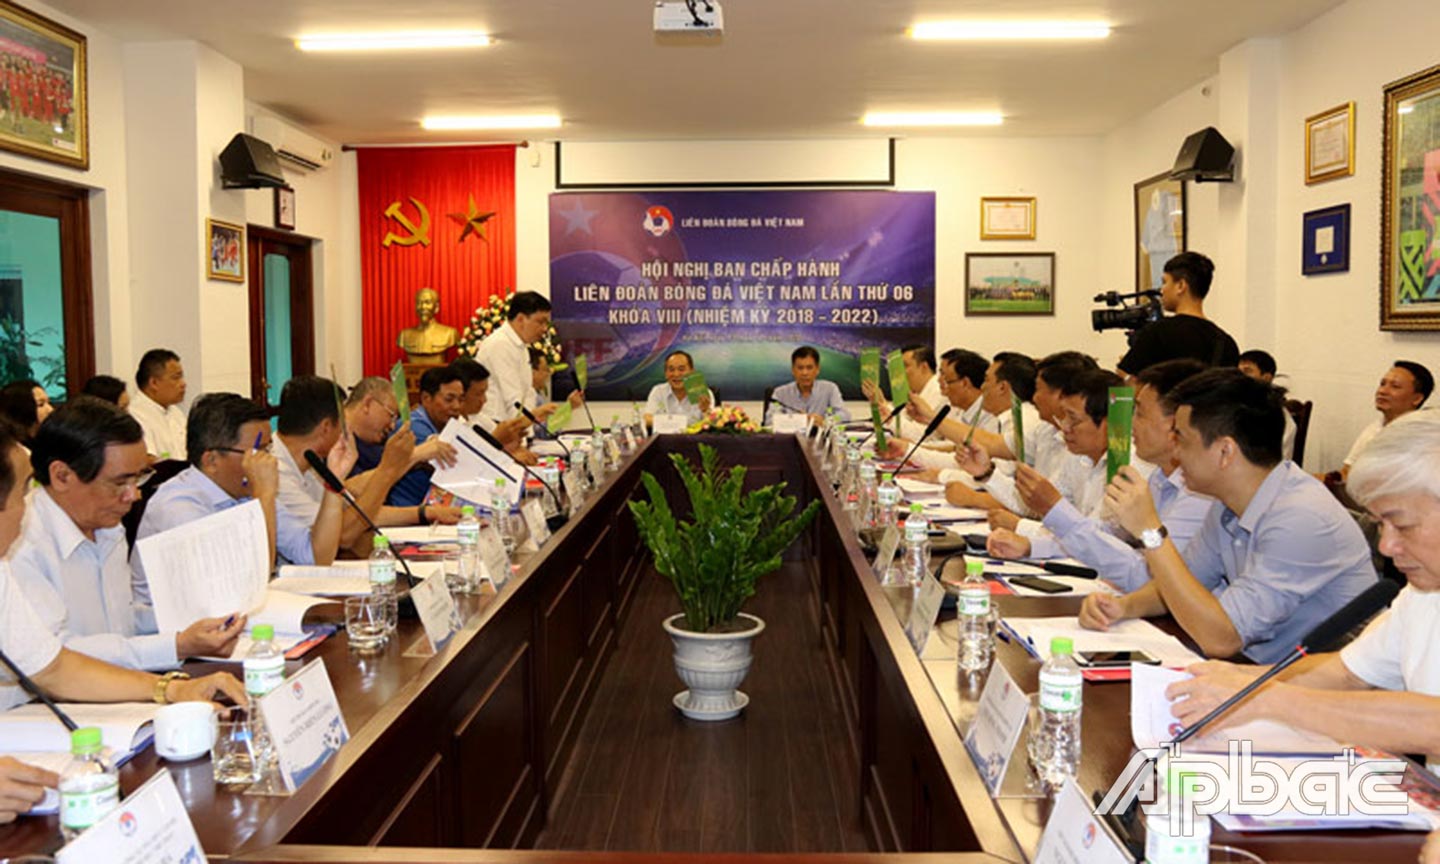 Toàn cảnh Hội nghị BCH Liên đoàn bóng đá Việt Nam.